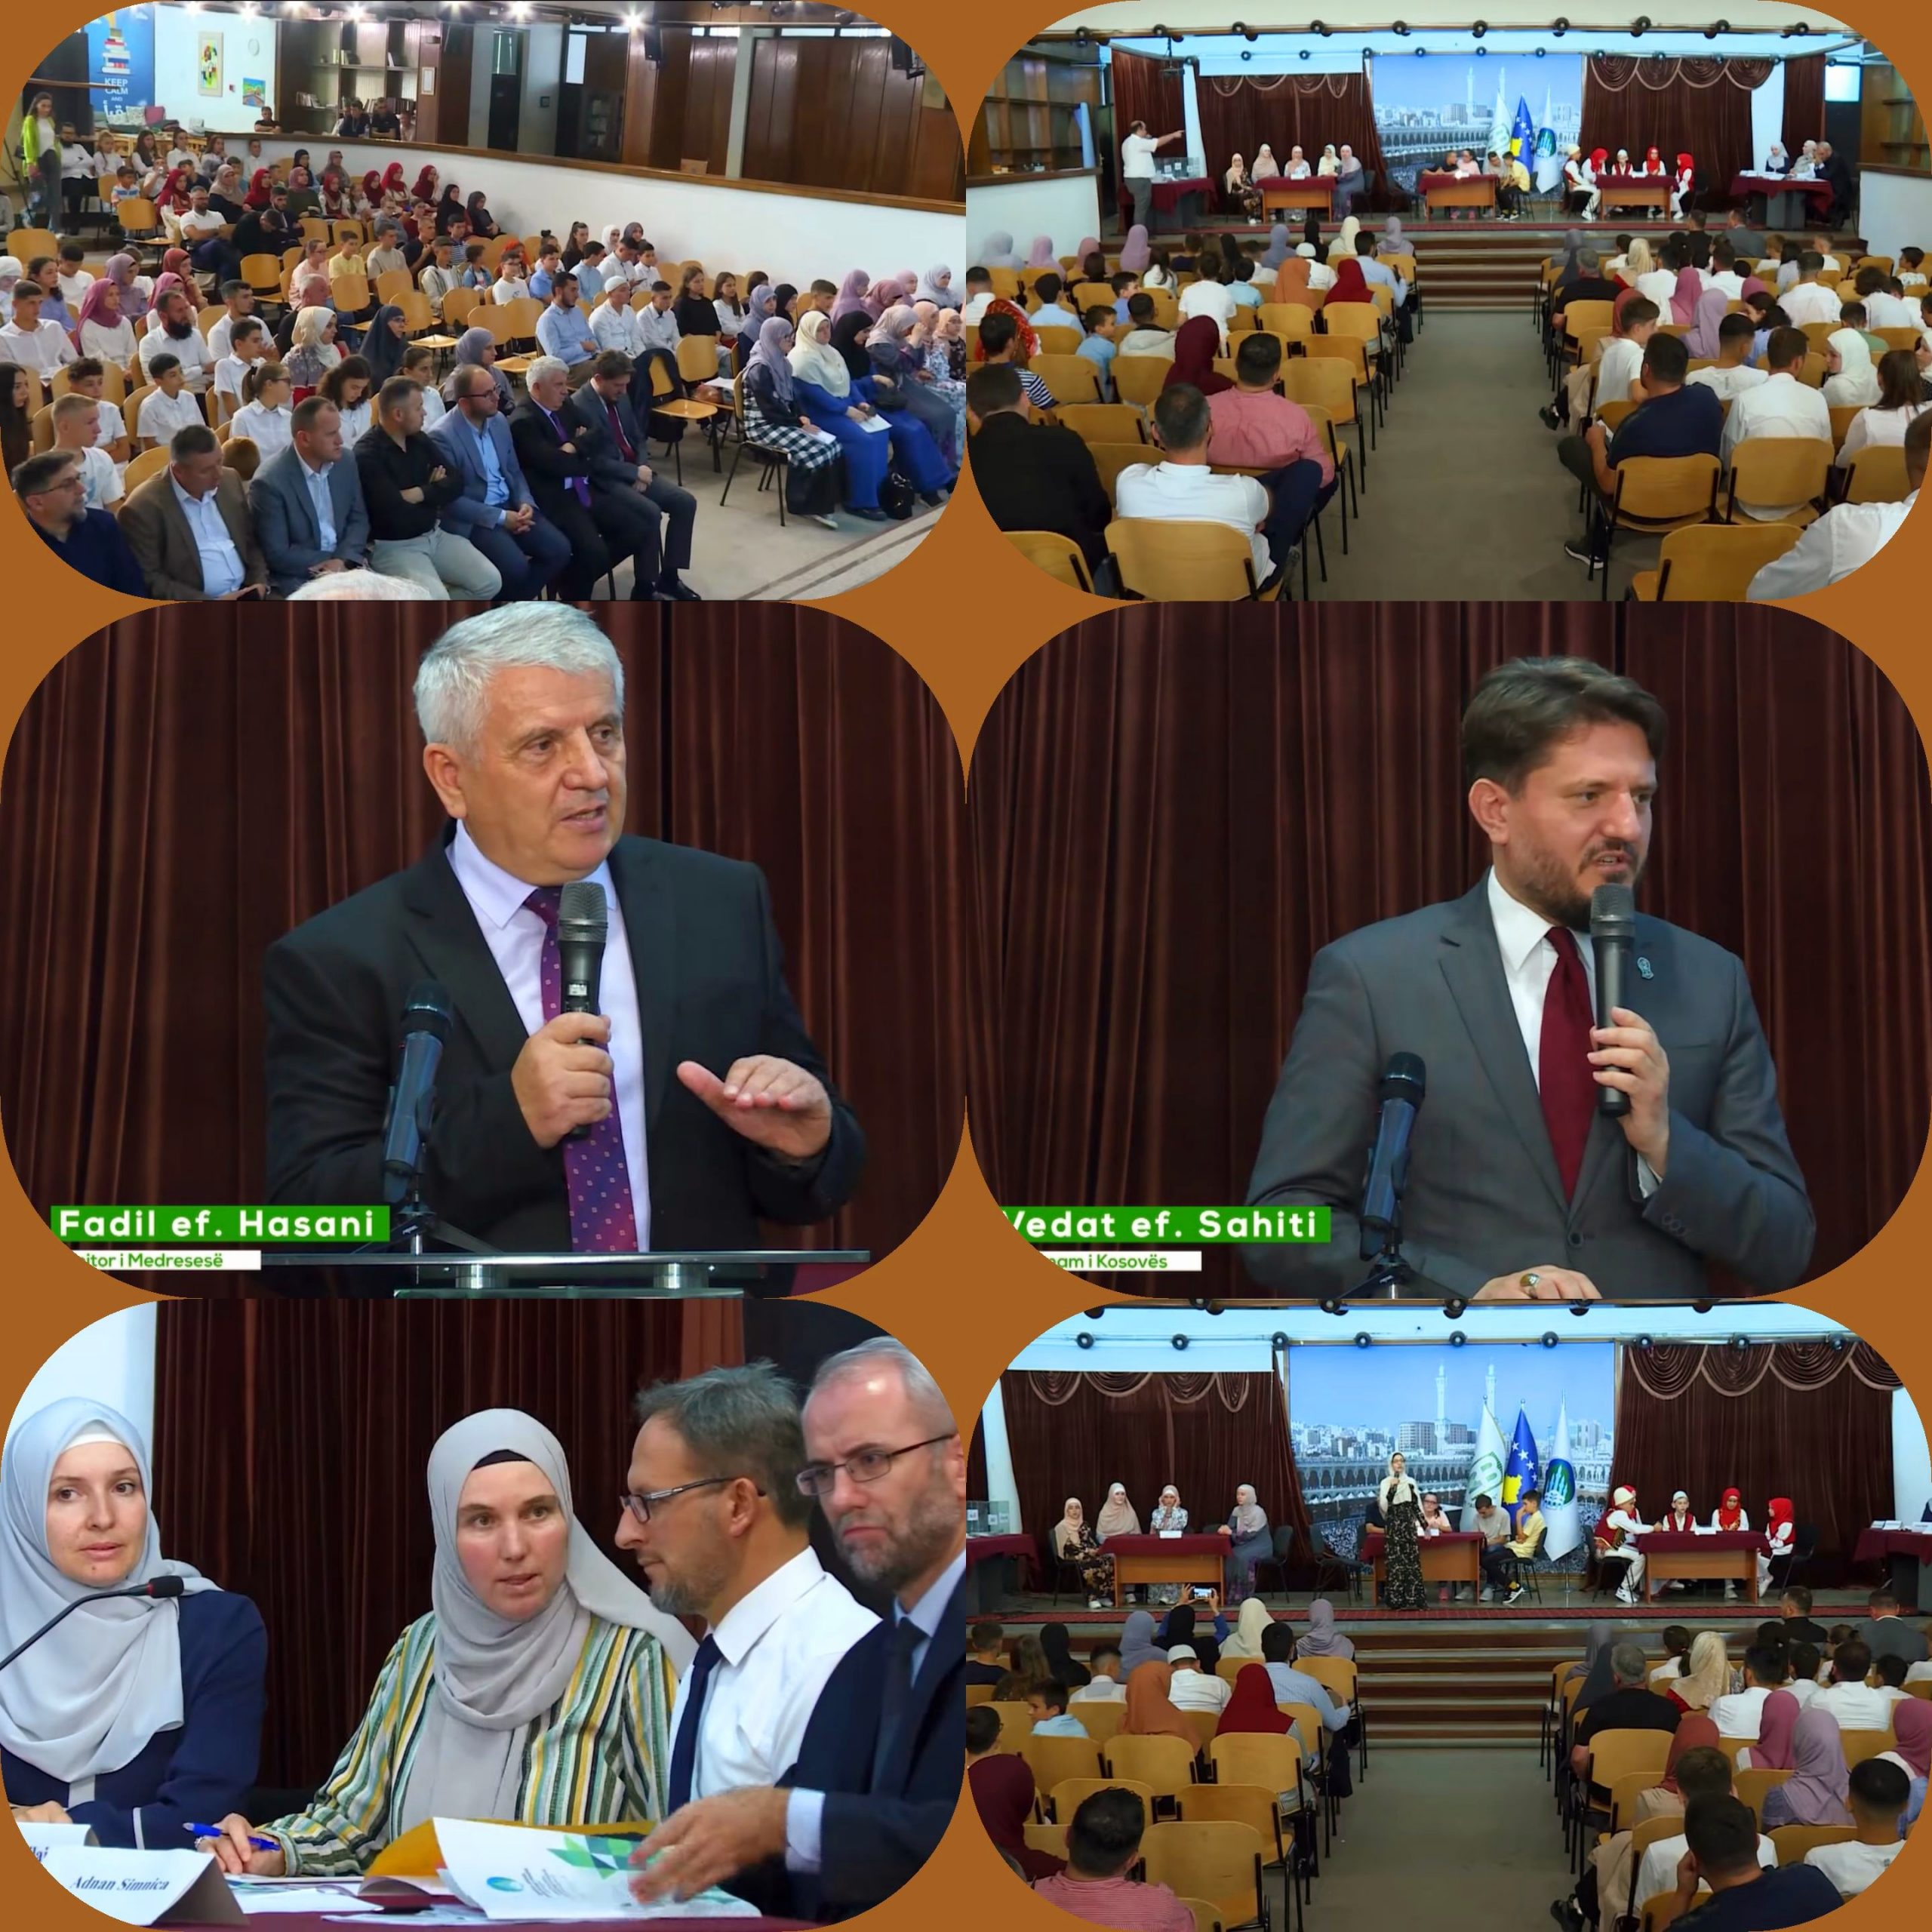 احتضنت مدرسة "علاء الدين" الثانوية الإسلامية، في العاصمة بريشتينا، المسابقة الإسلامية الكبرى لكتاتيب مساجد محافظات كوسوفا